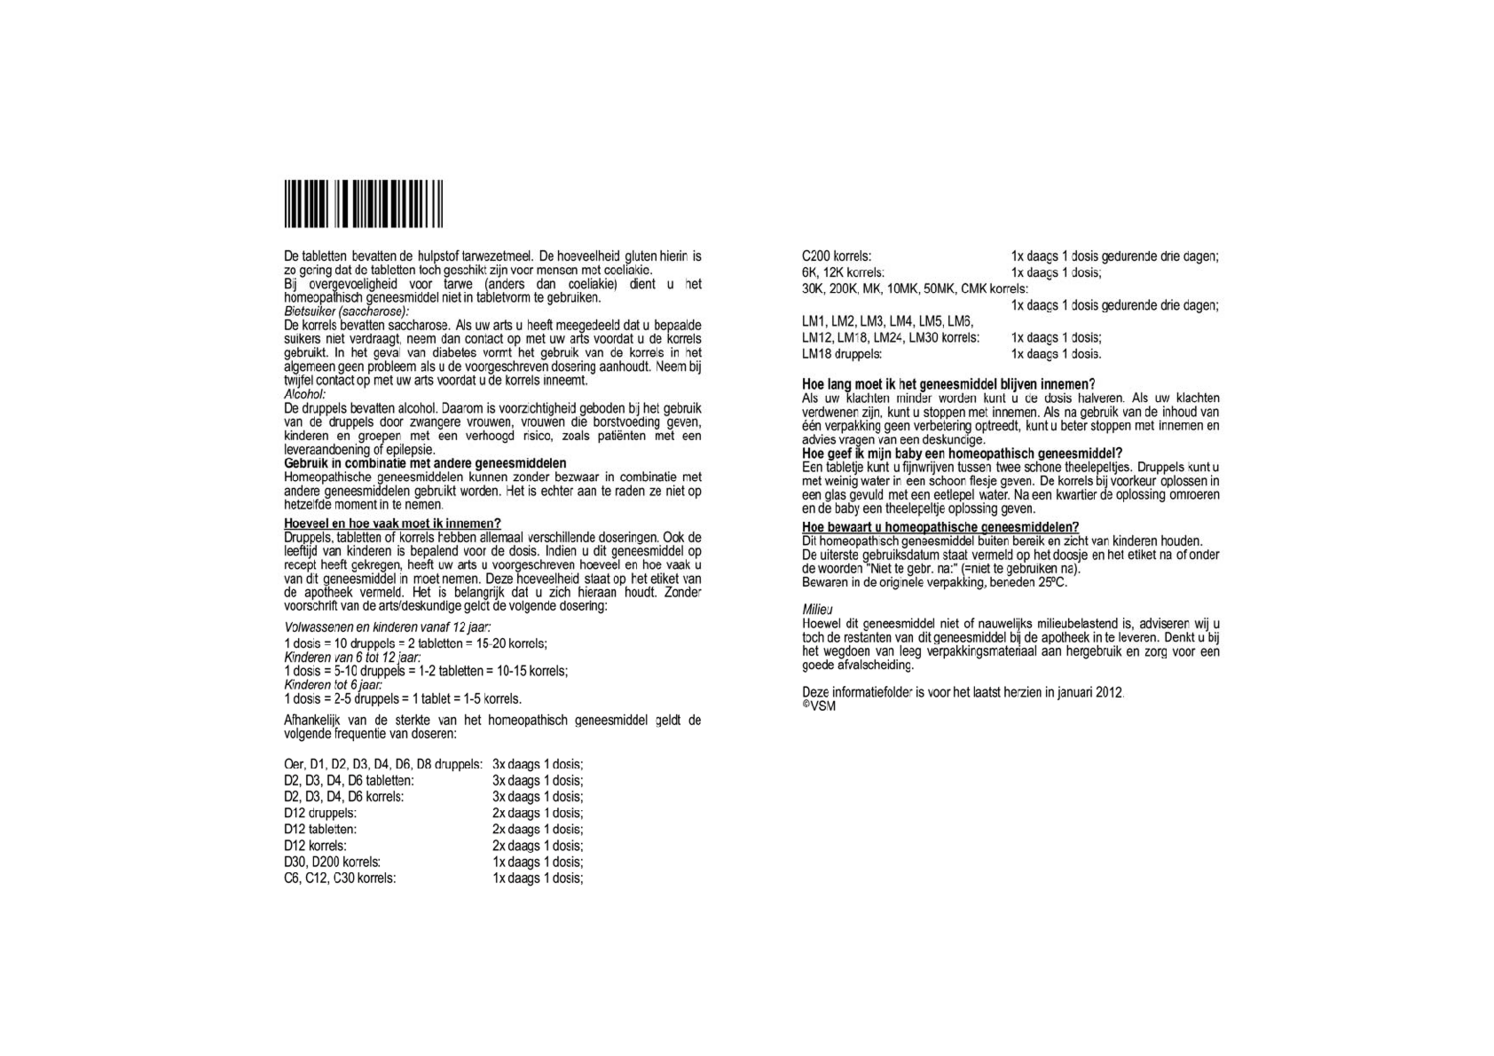 Magnesium Phosphoricum D3 Tabletten afbeelding van document #2, bijsluiter